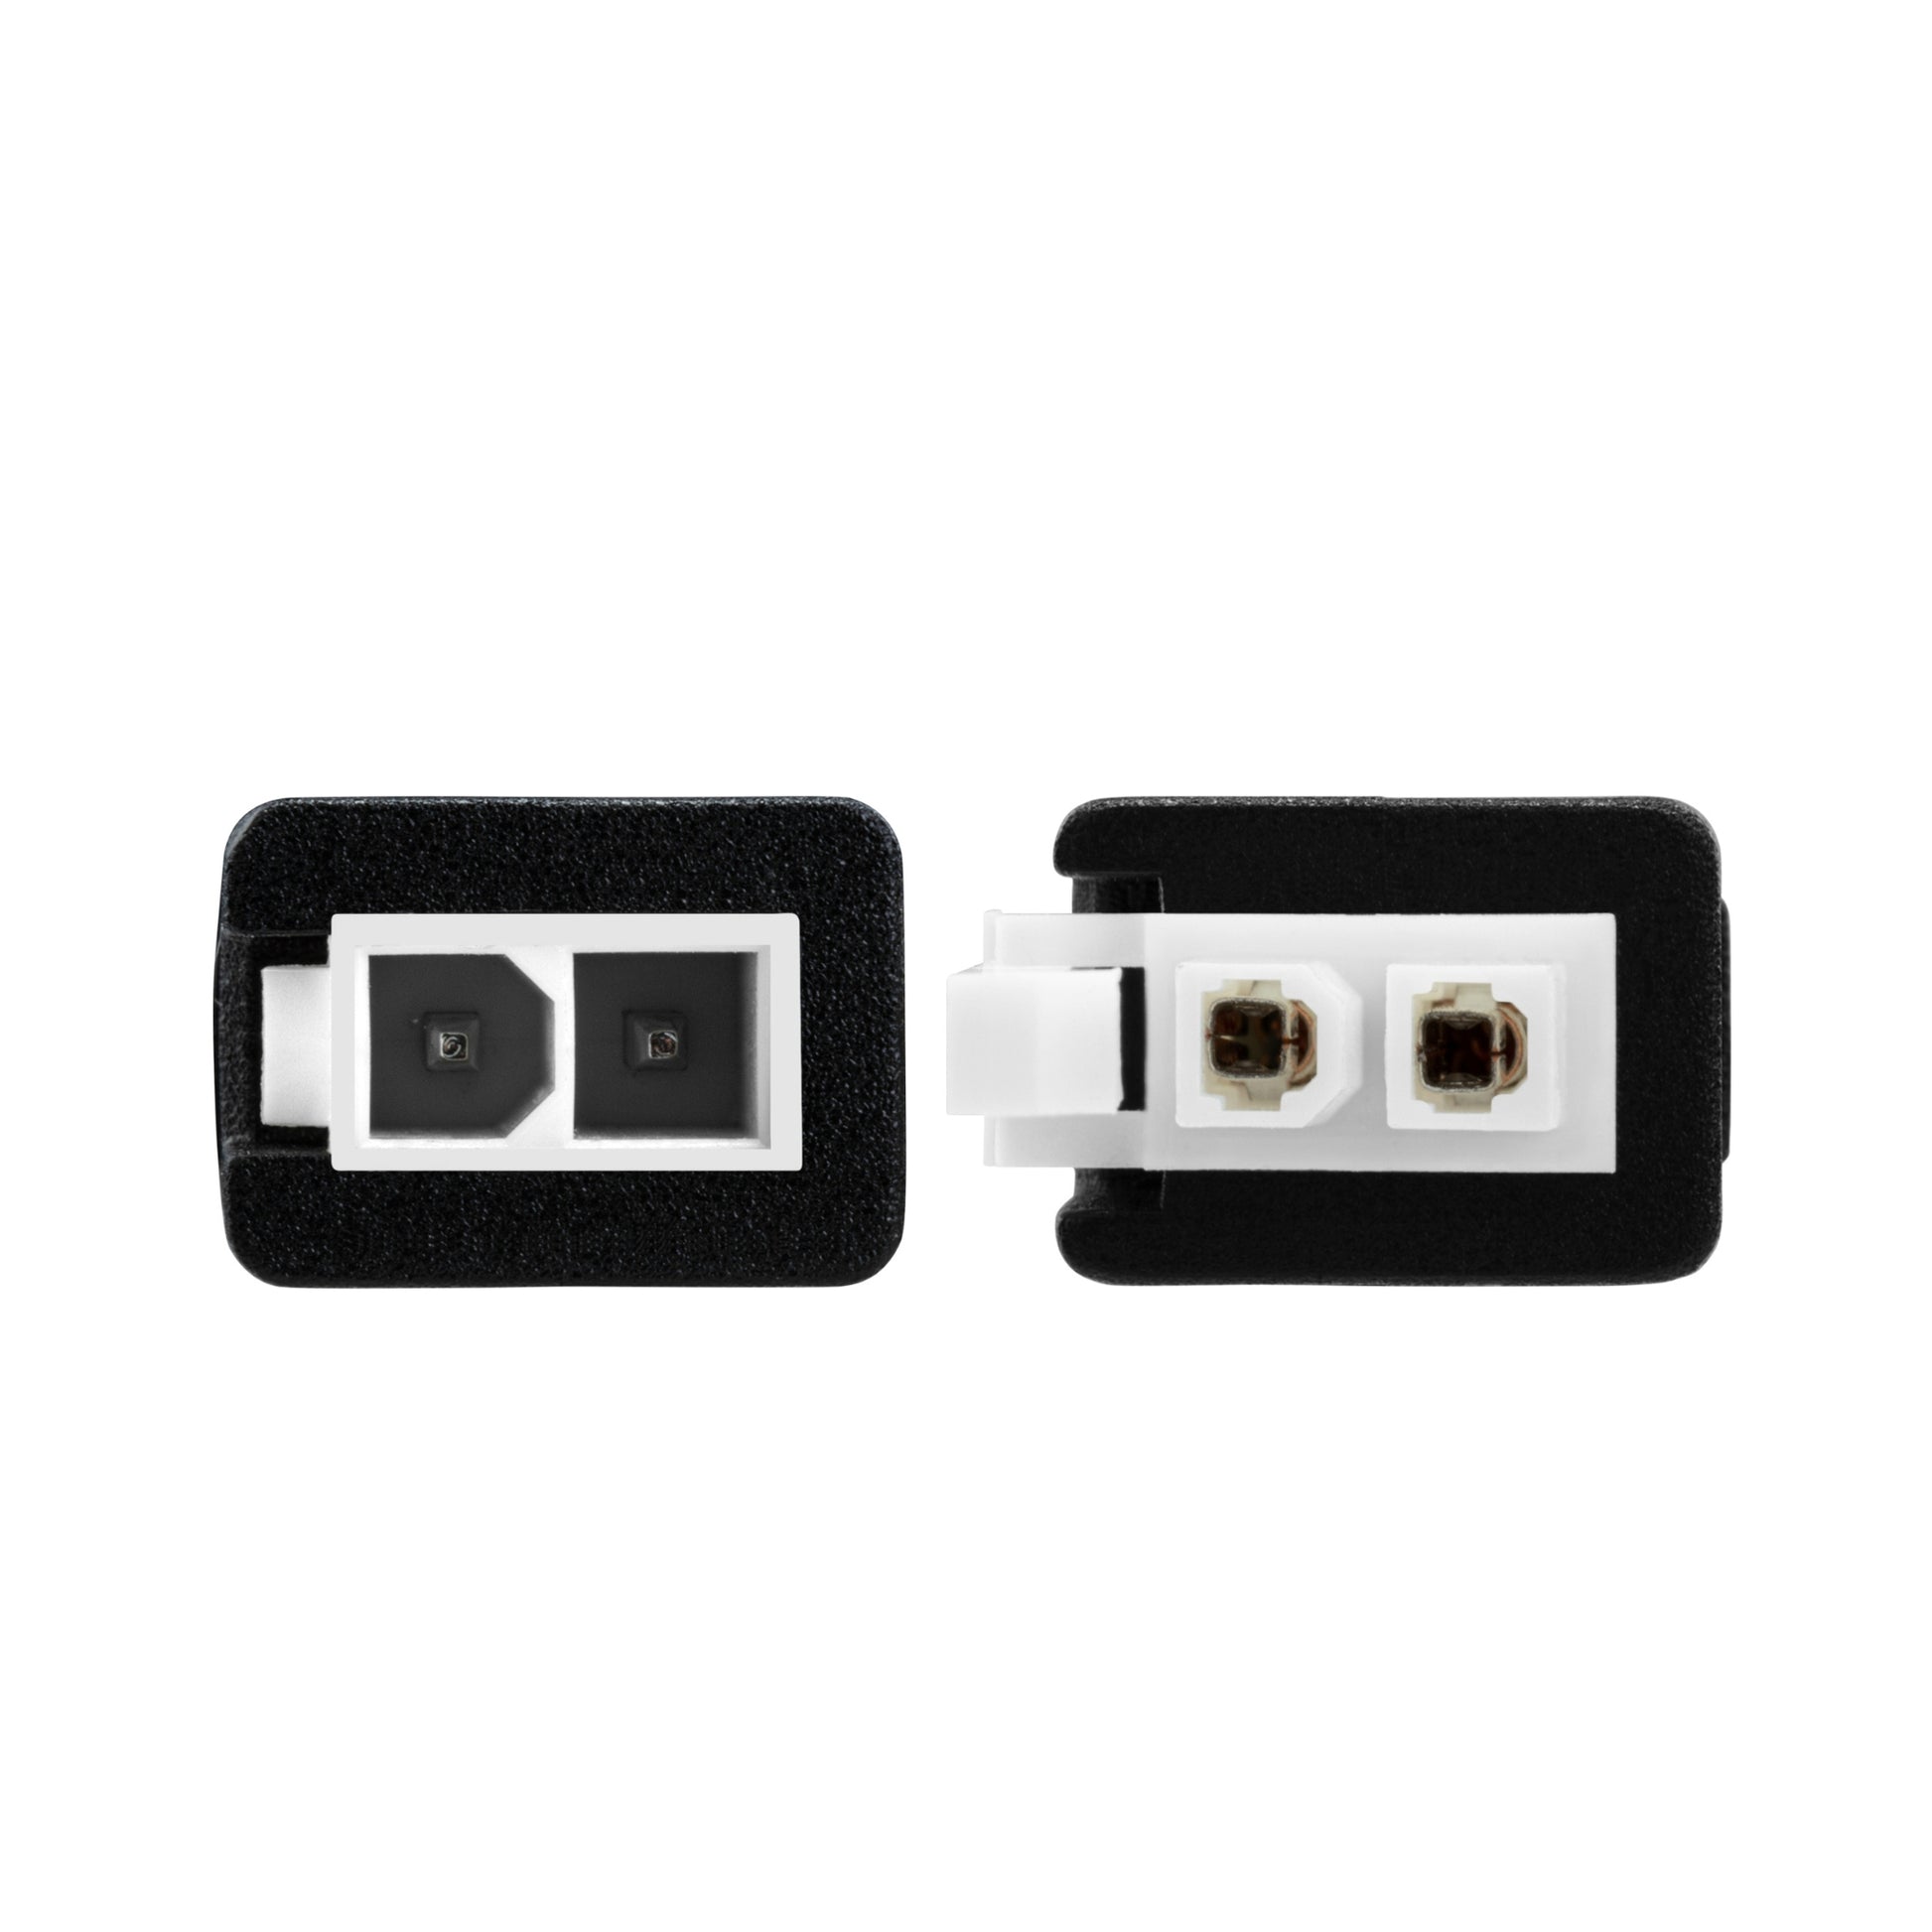 Molex Mini-Fit Jr 2-Pin input Plug; Molex Mini-Fit Jr 2-Pin output Plug